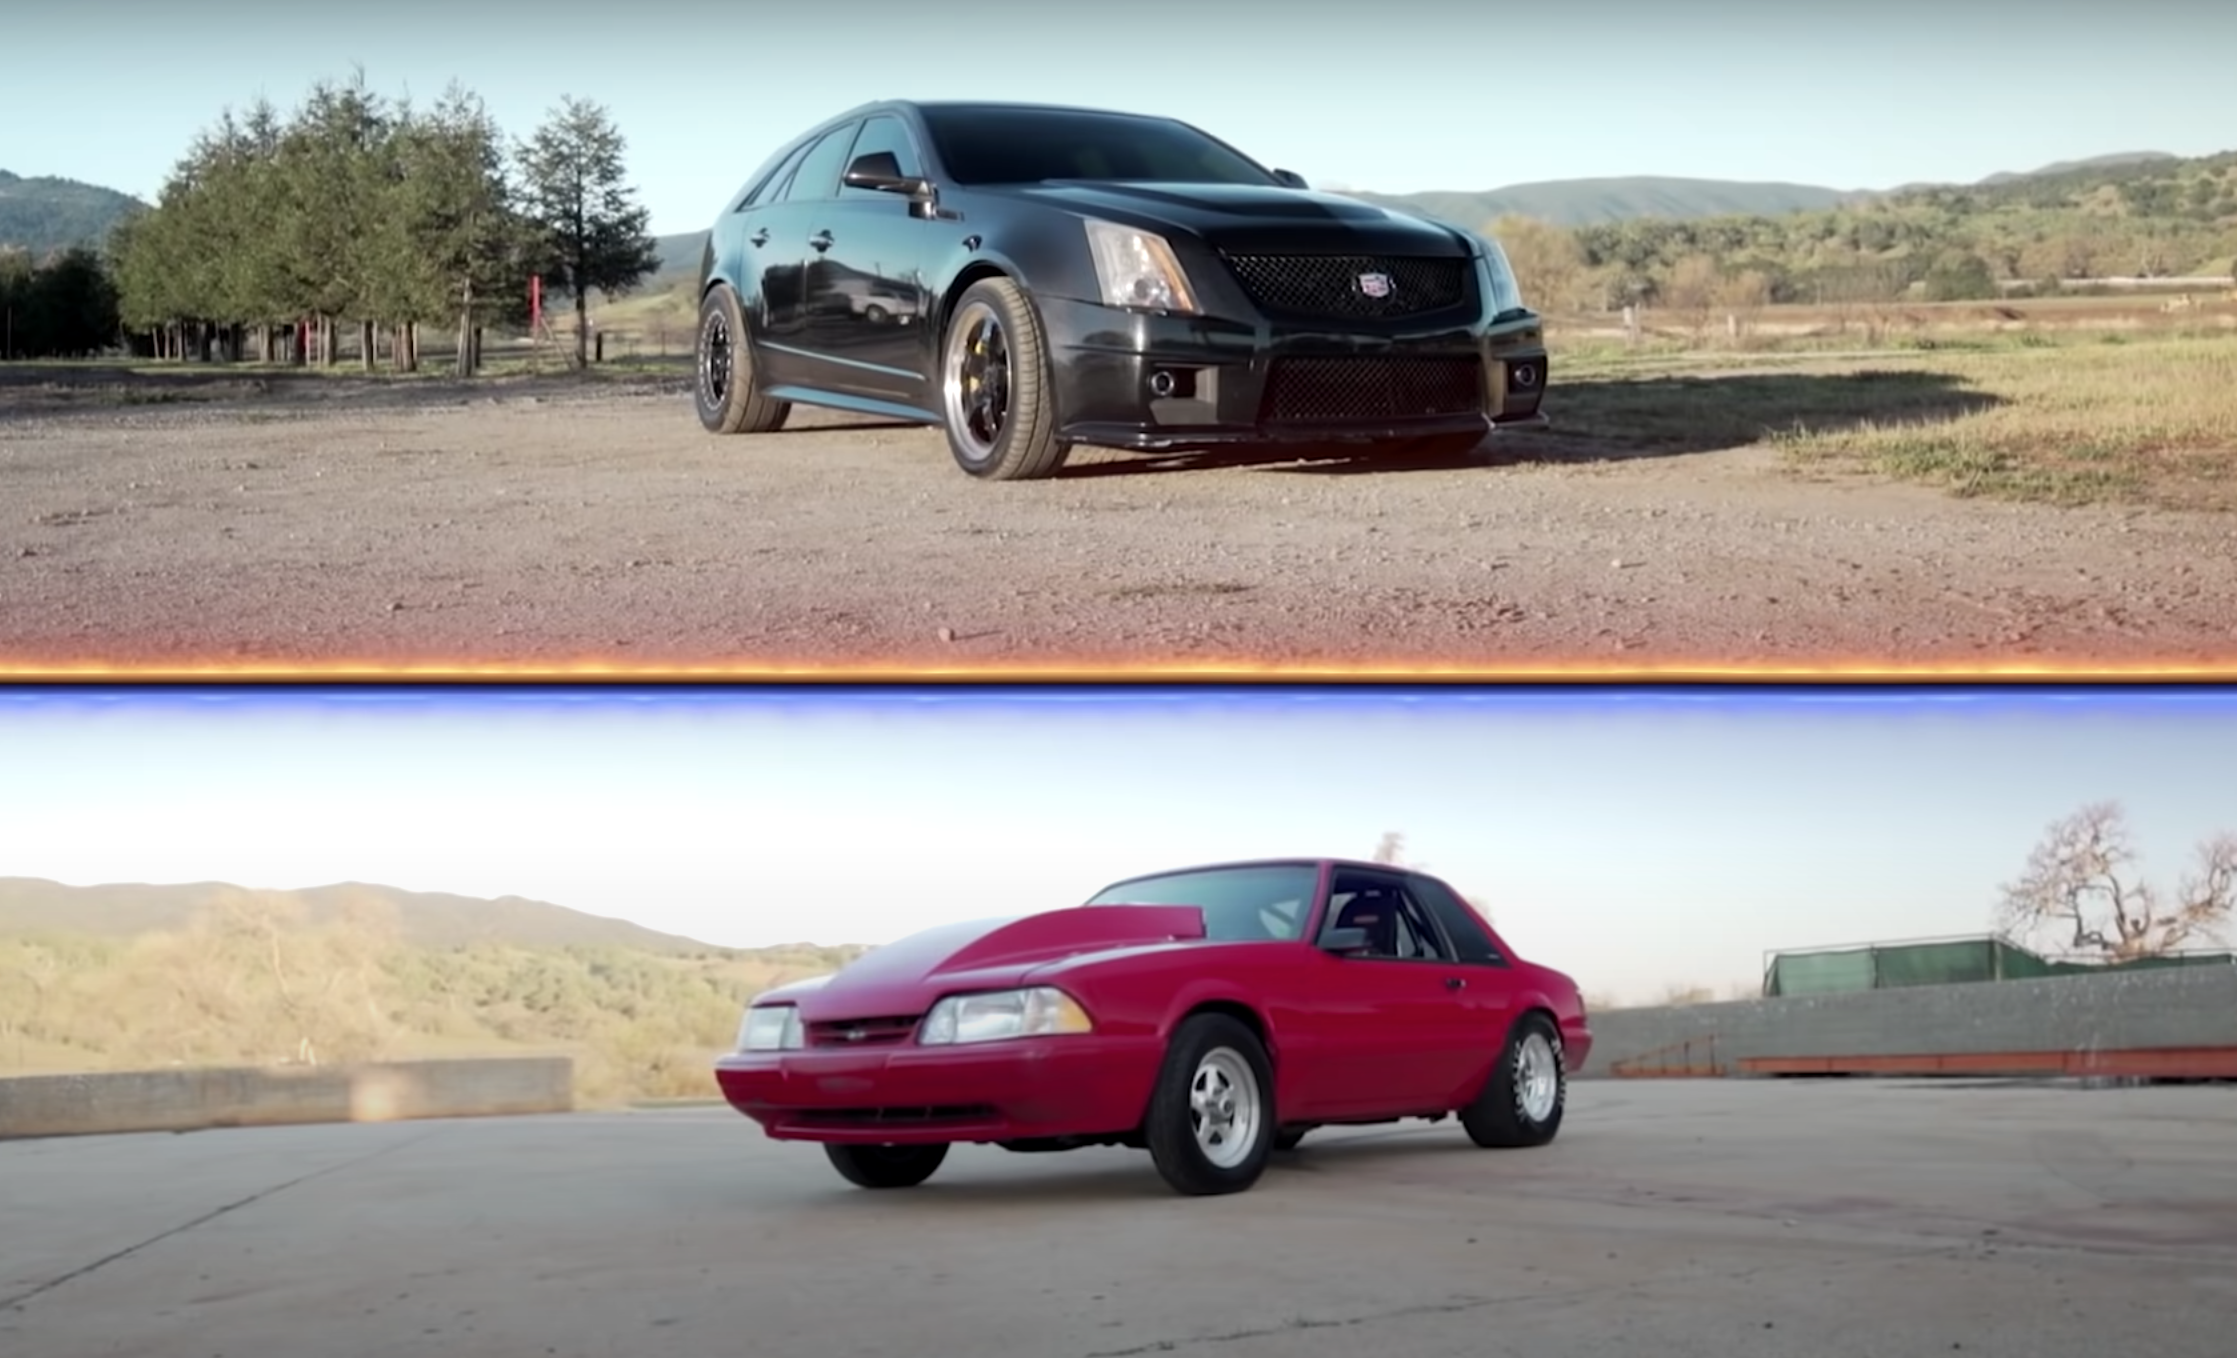 Универсал Cadillac CTS и дрэговый Ford Mustang сравнили в гонке по прямой